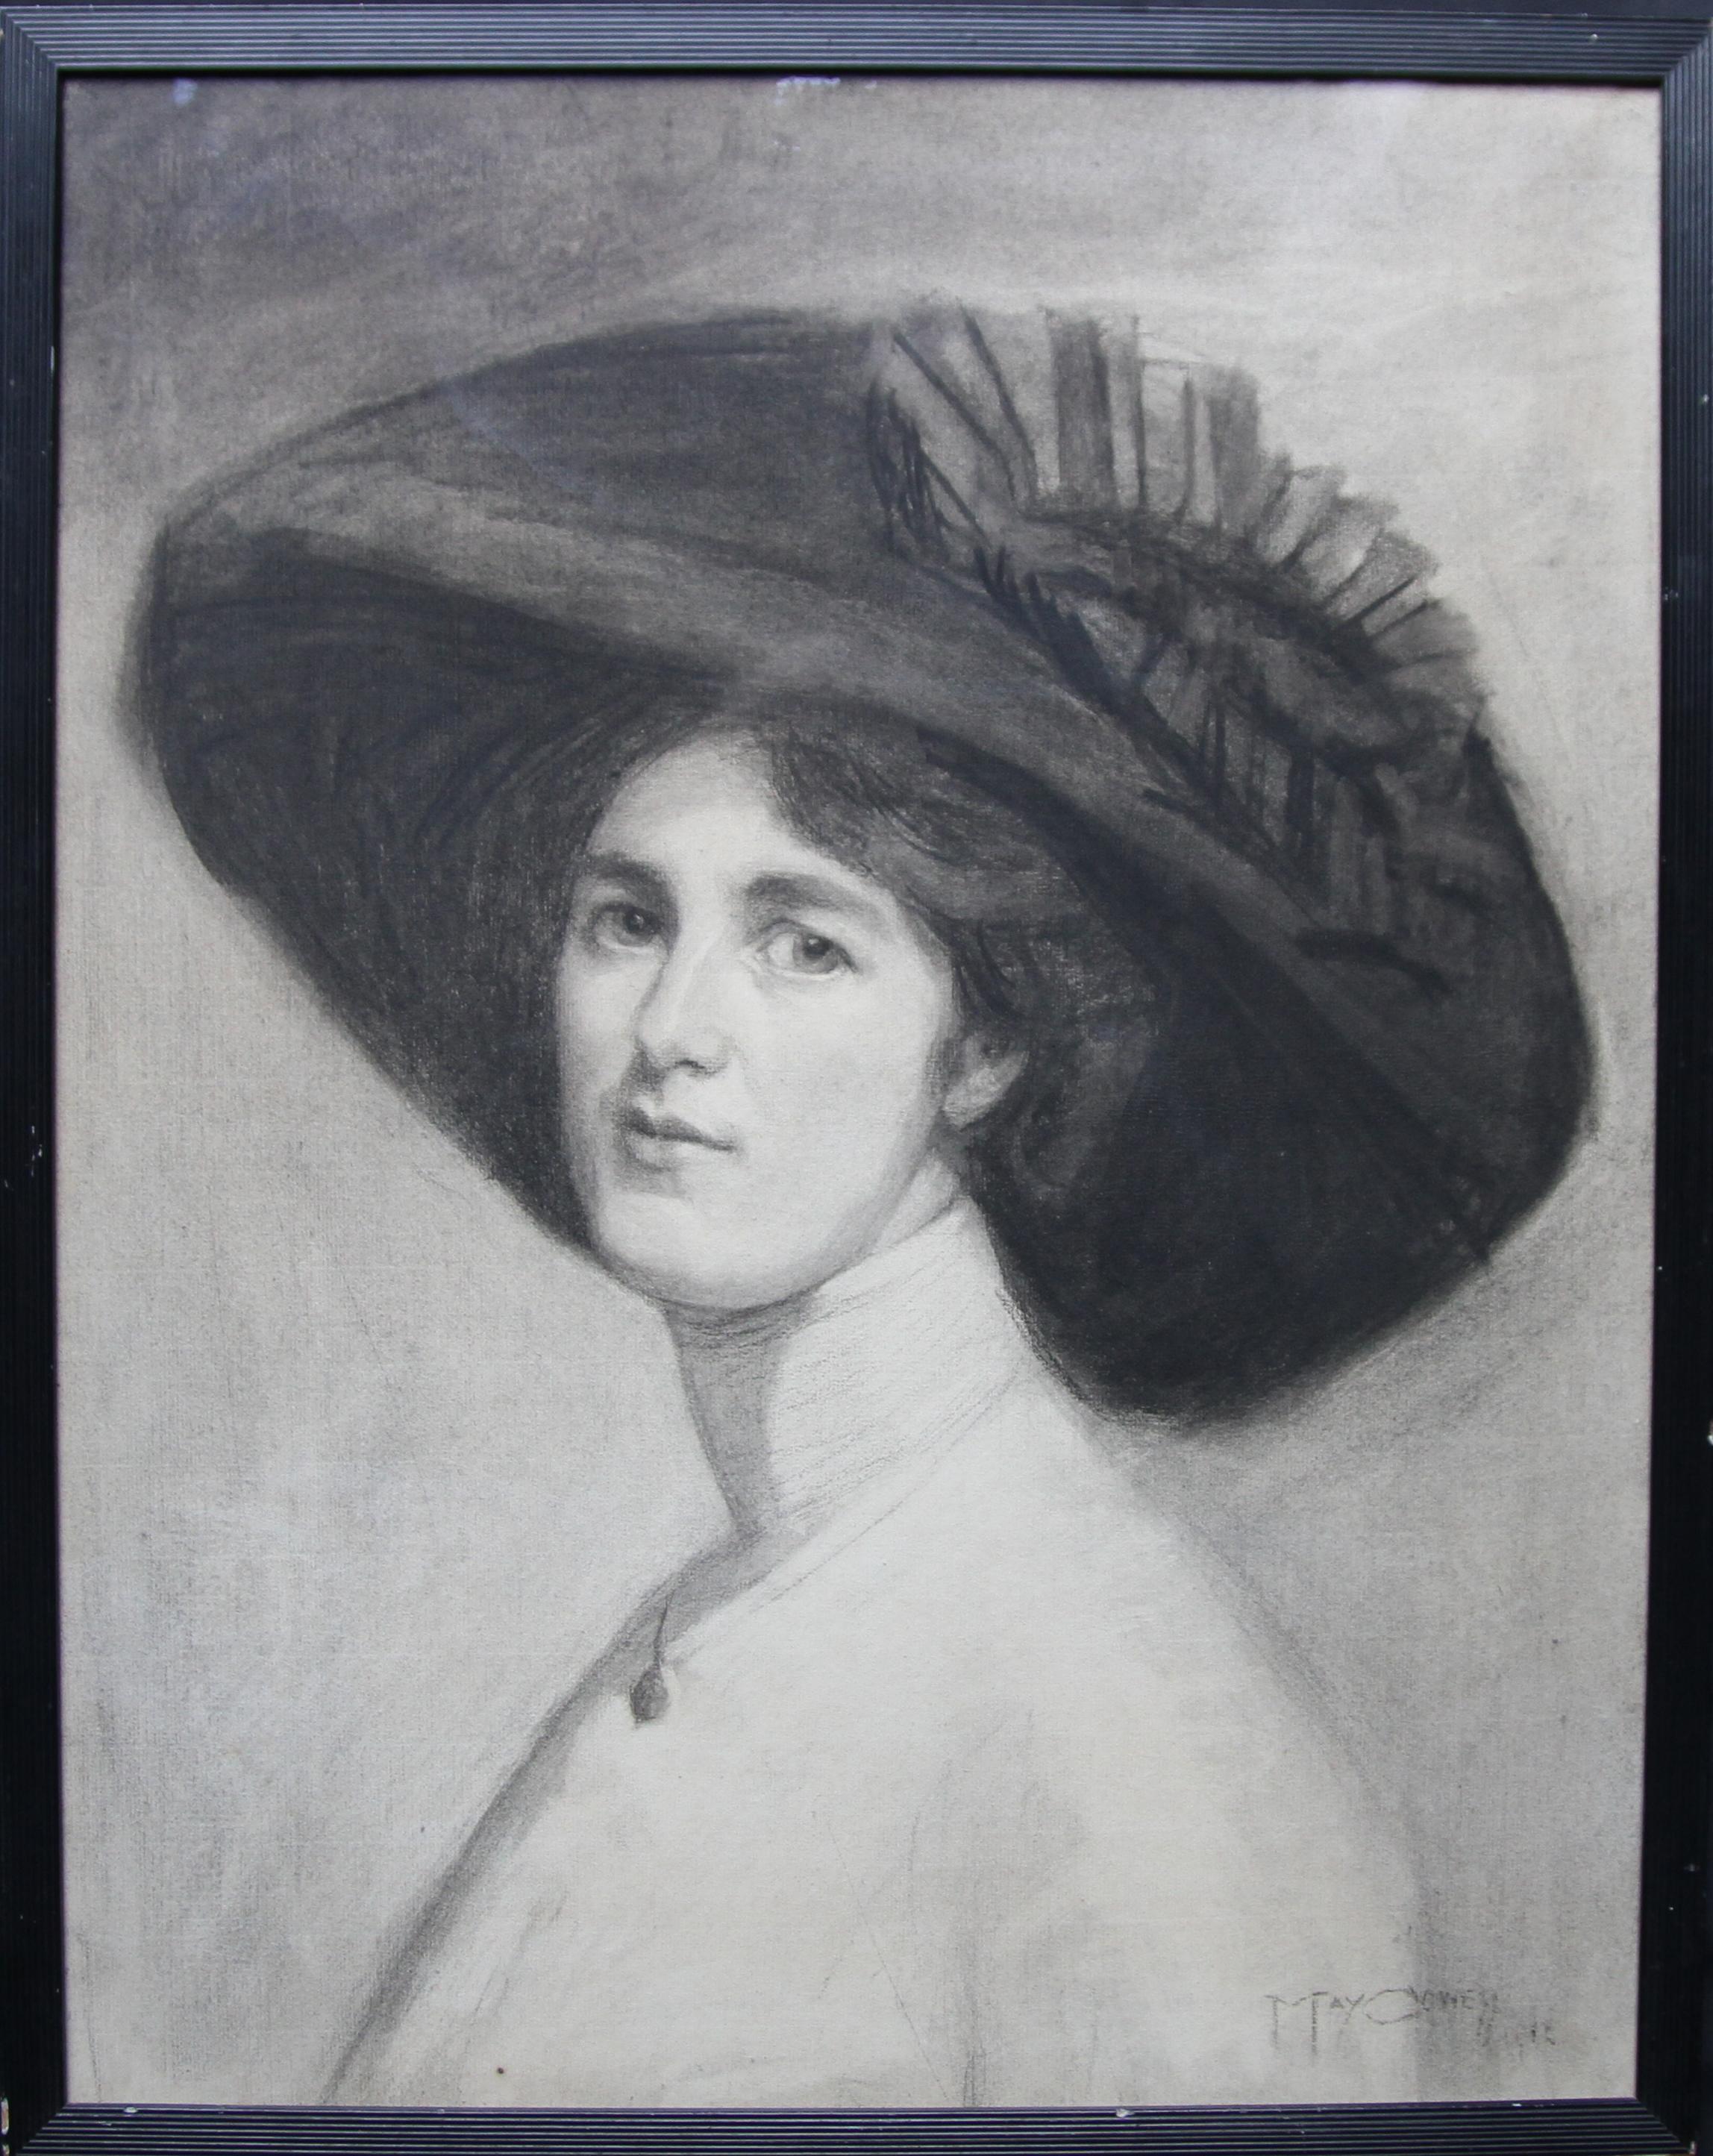 Maria Cowell nee Sayer Portrait – Porträt von Decima Moore – Schauspielerin und Suffragette, edwardianische Zeichnung einer Künstlerin